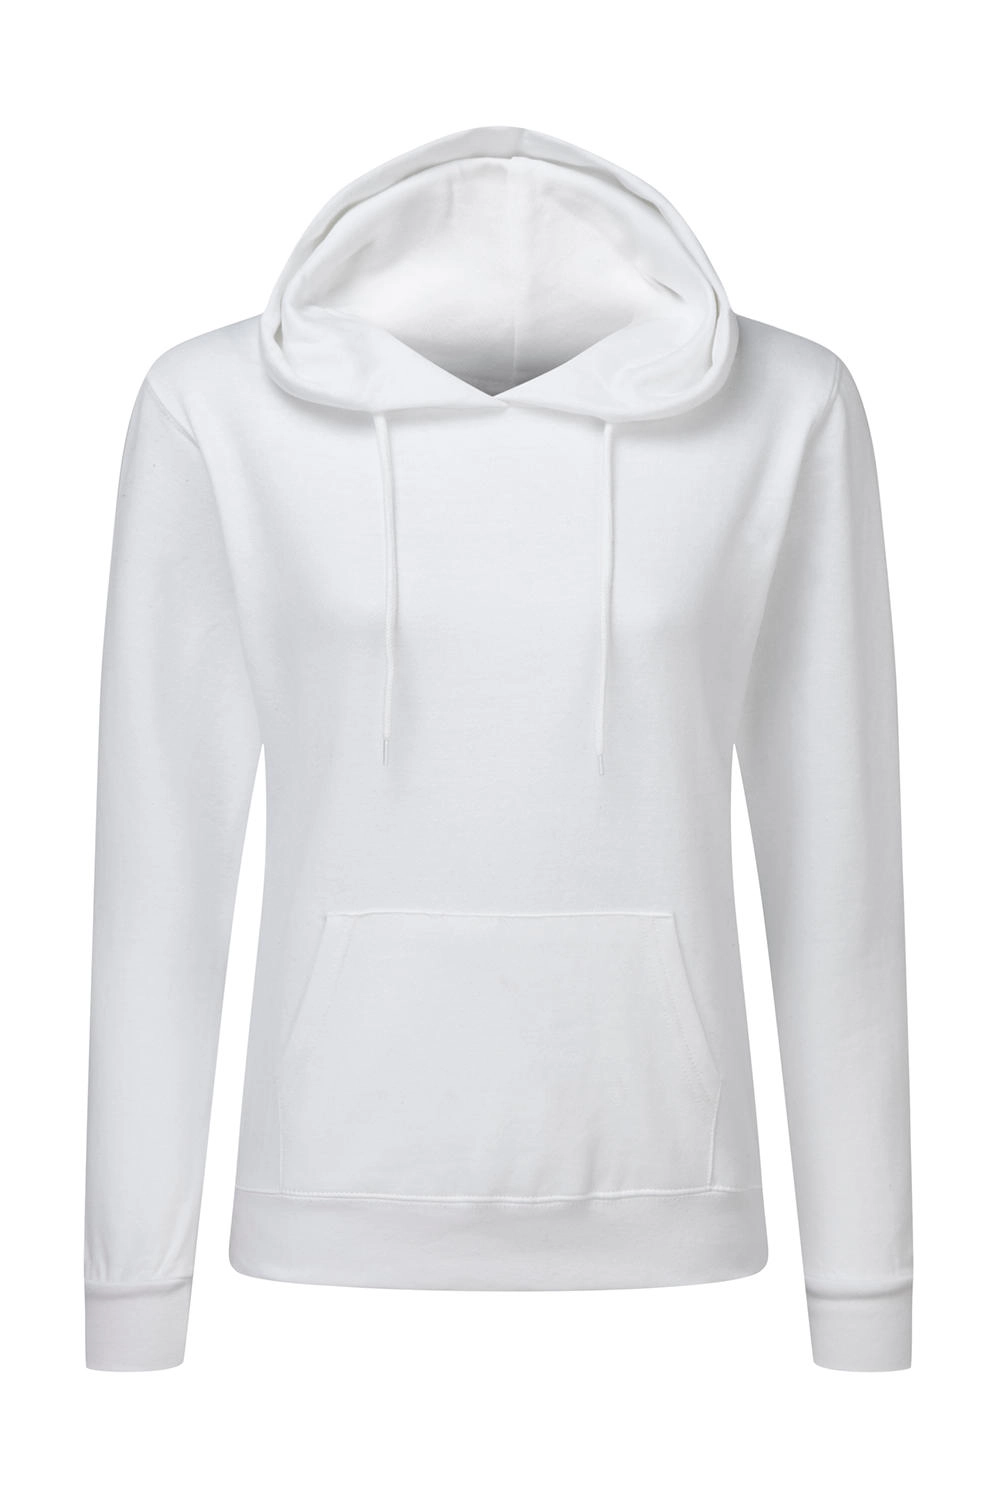 Hooded Sweatshirt Women zum Besticken und Bedrucken in der Farbe White mit Ihren Logo, Schriftzug oder Motiv.